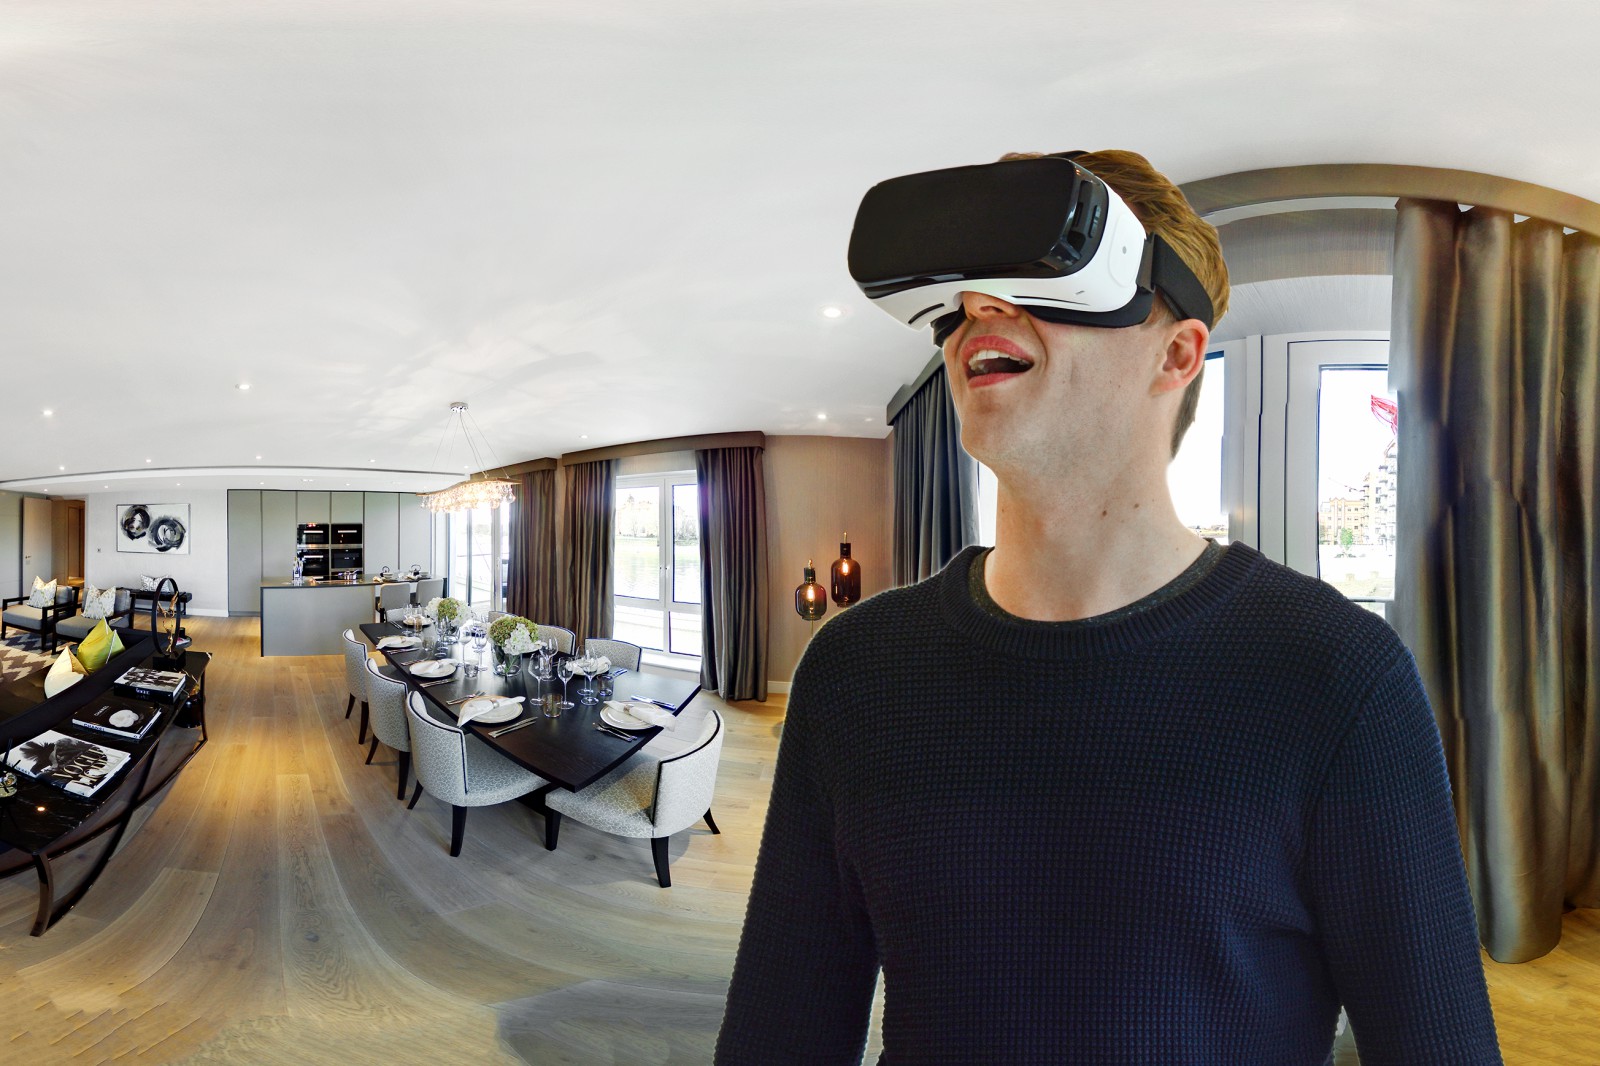 Ứng dụng công nghệ VR trong chọn thuê văn phòng có rất nhiều lợi ích cho khách hàng